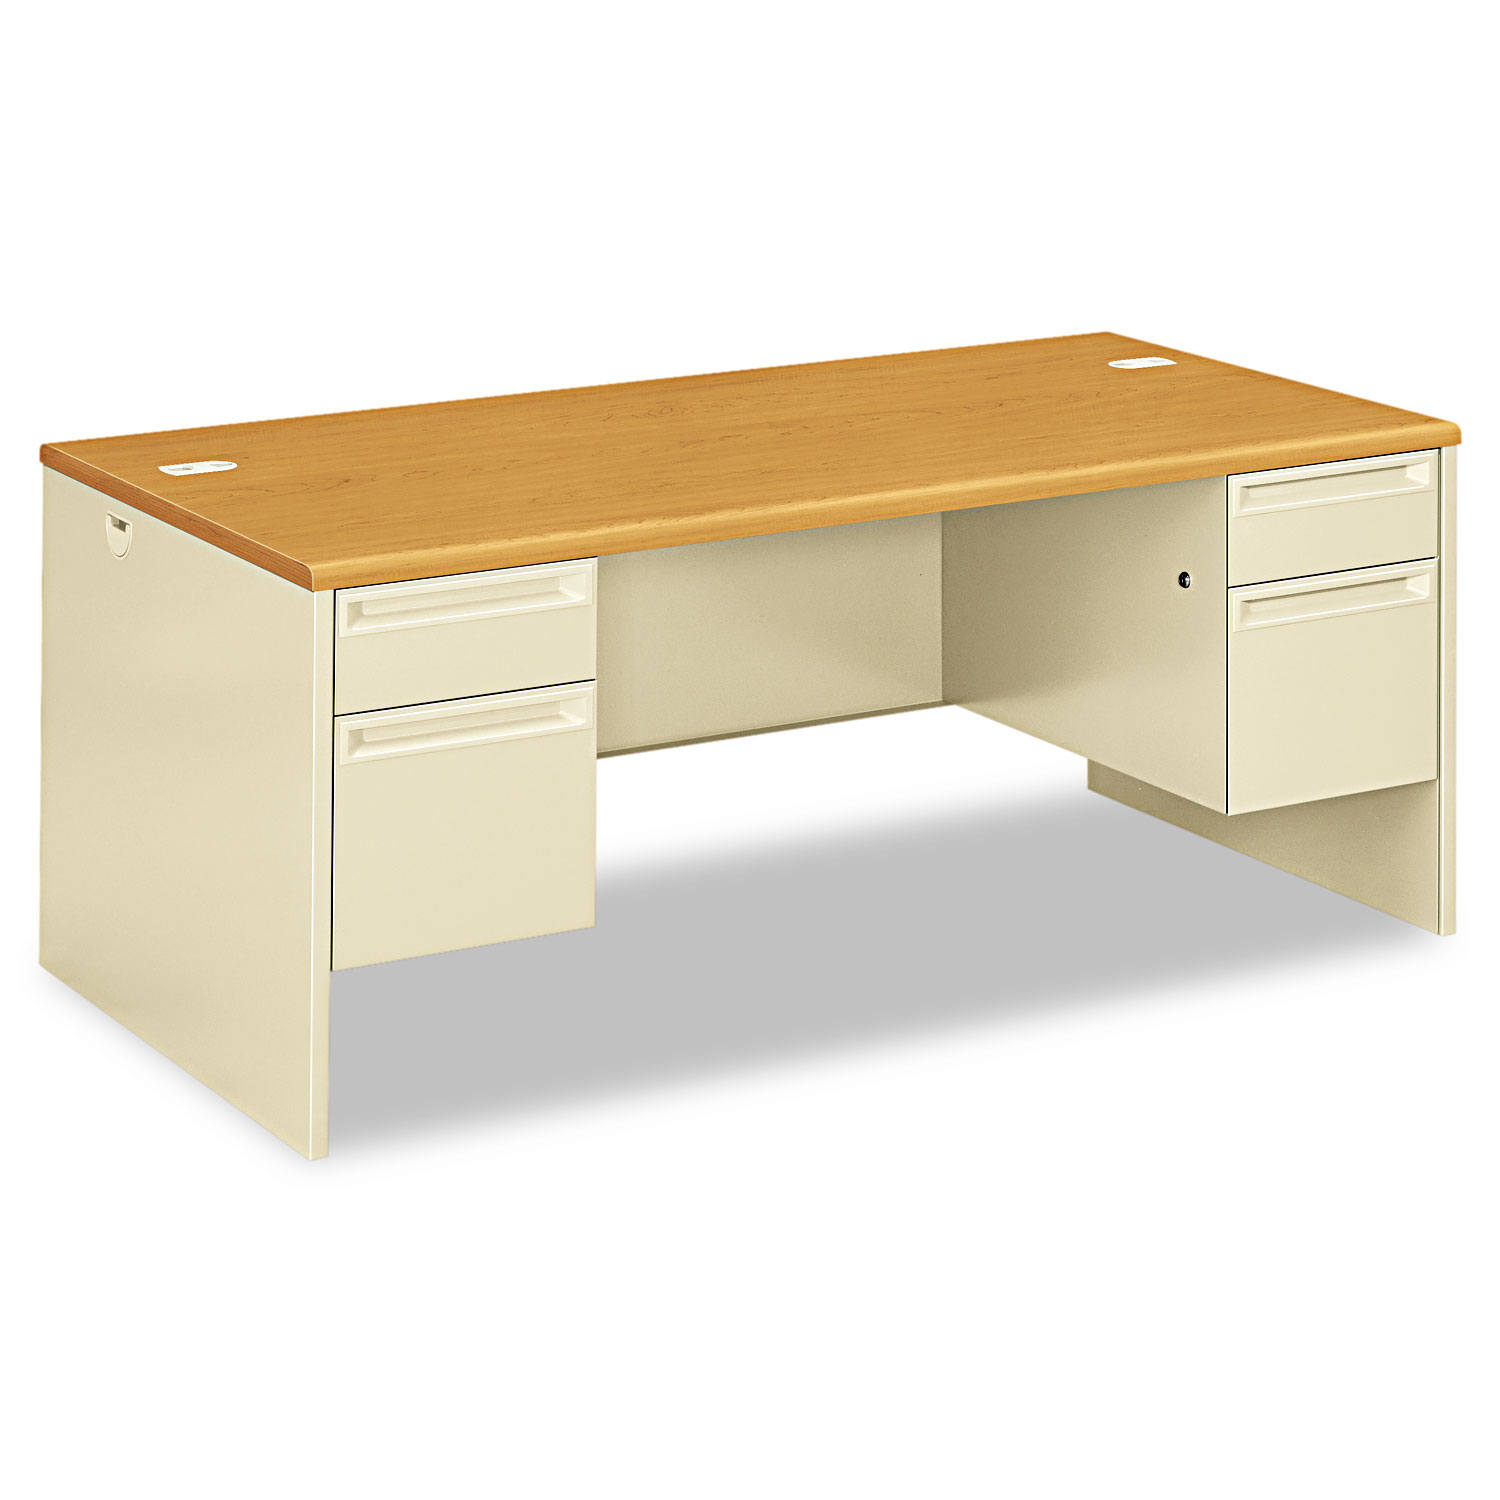  HON H38180.C.L 38000 Series Double Pedestal Desk, 72w x 36d x 29.5h, Harvest/Putty (HON38180CL) 